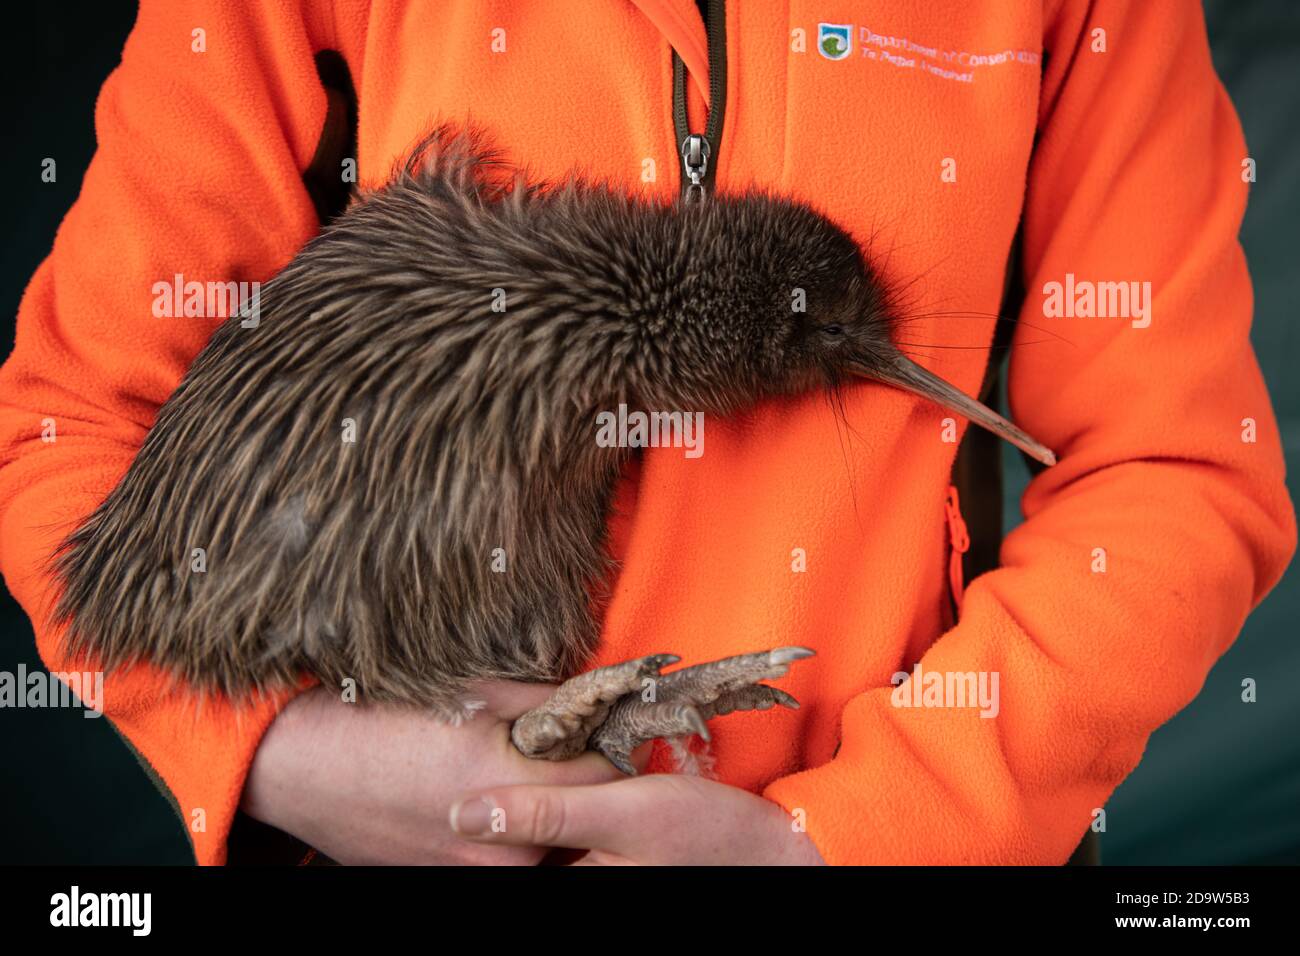 Pechino, Nuova Zelanda. 7 Nov 2020. Un ranger della foresta tiene un kiwi rowi durante un evento per restituire 13 kiwi rowi al loro habitat naturale vicino al lago Matheson sull'isola del sud, Nuova Zelanda, 7 novembre 2020. Credit: Yang Liu/Xinhua/Alamy Live News Foto Stock